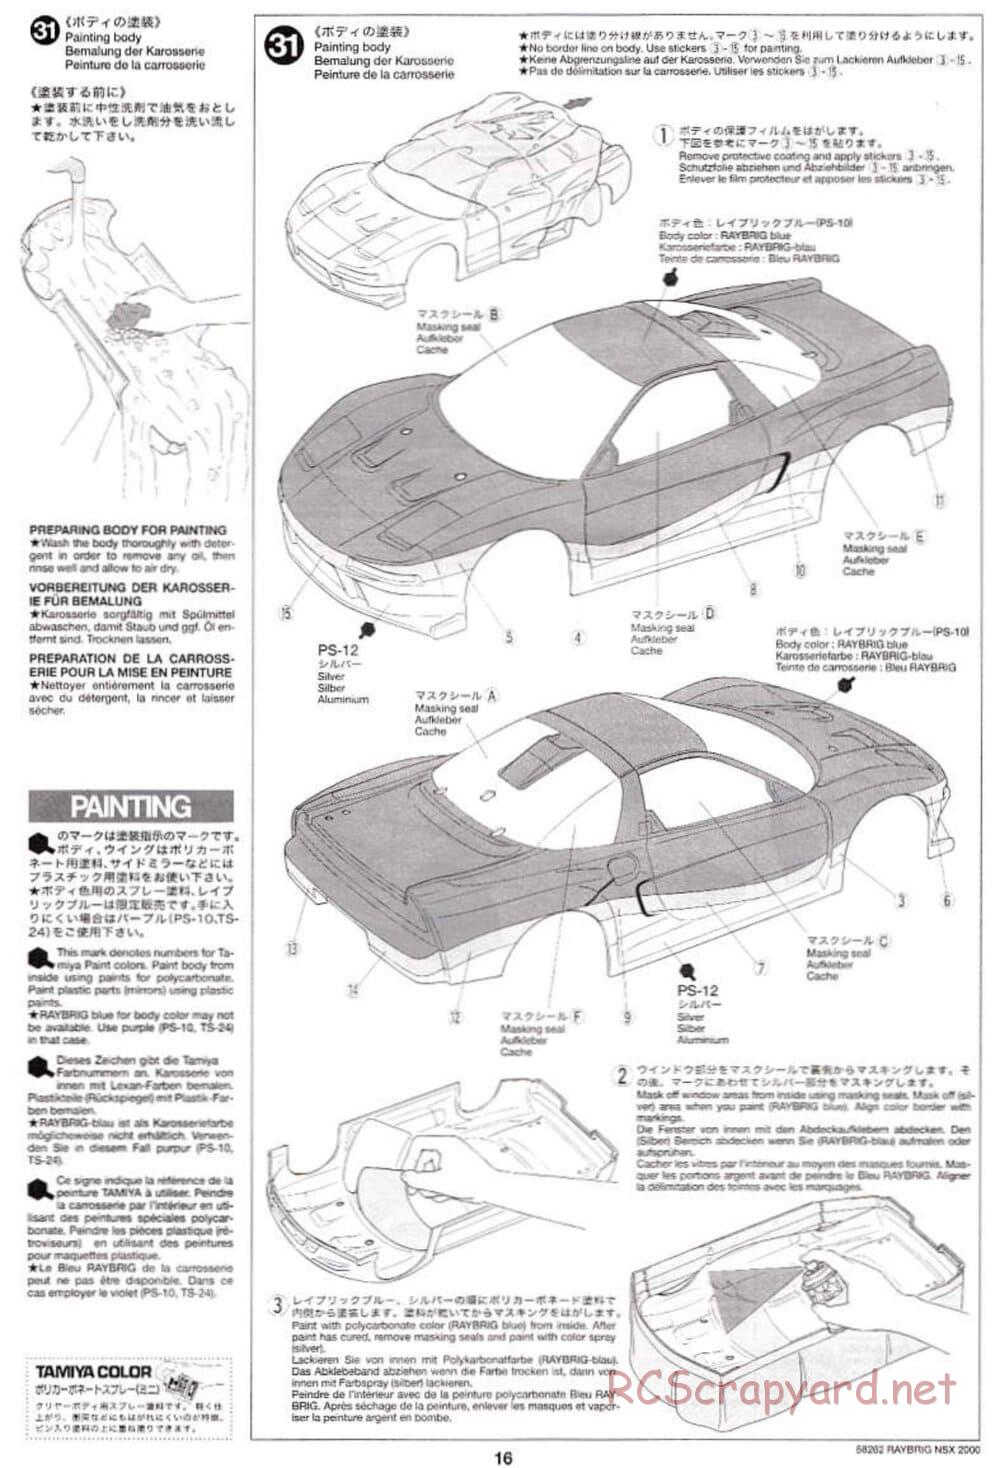 Tamiya - Raybrig NSX 2000 - TB-01 Chassis - Manual - Page 16